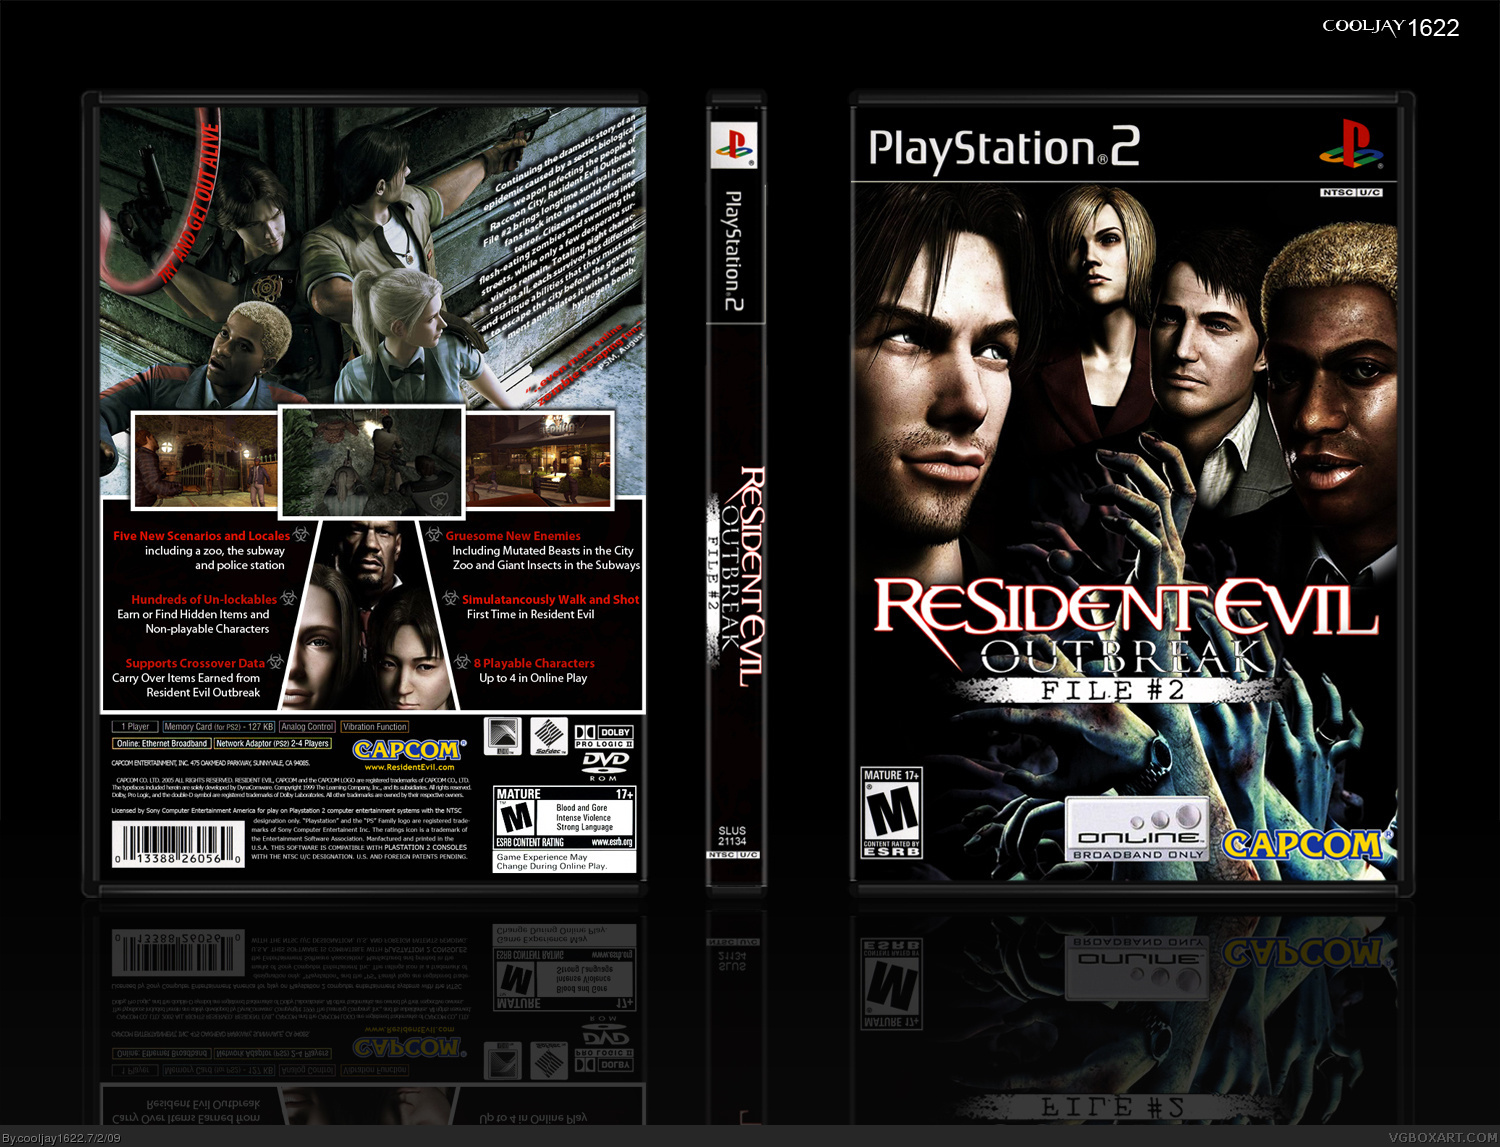 Resident Evil Outbreak File 2 box cover